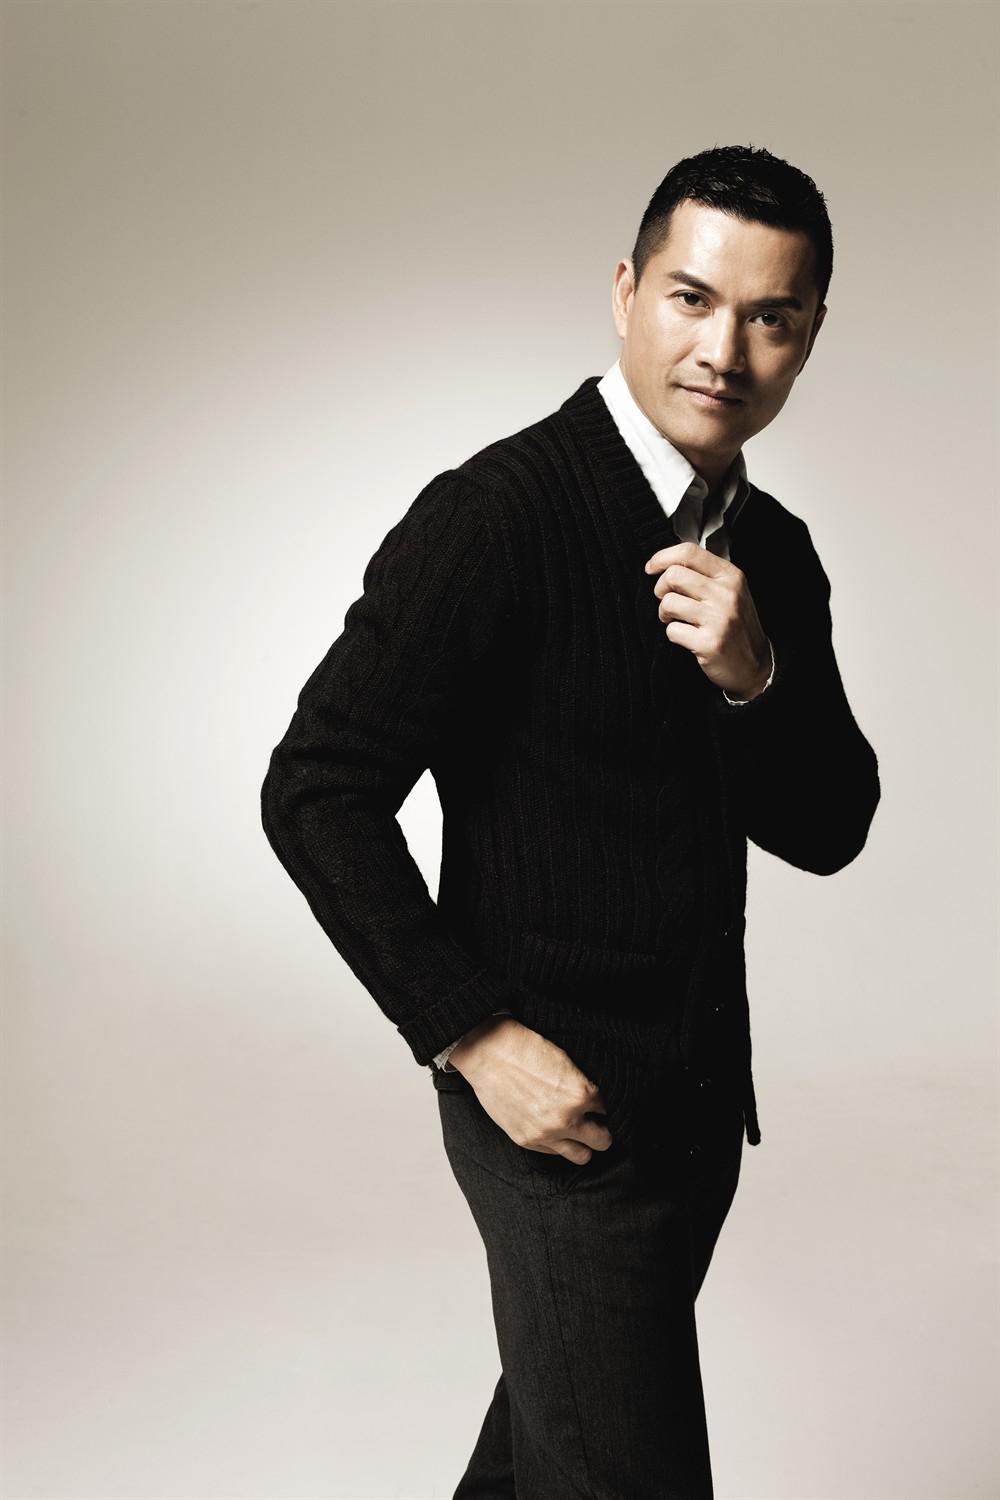 吕良伟:演技精湛的男演员 吕良伟,中国香港影视男演员,代表作品有上海